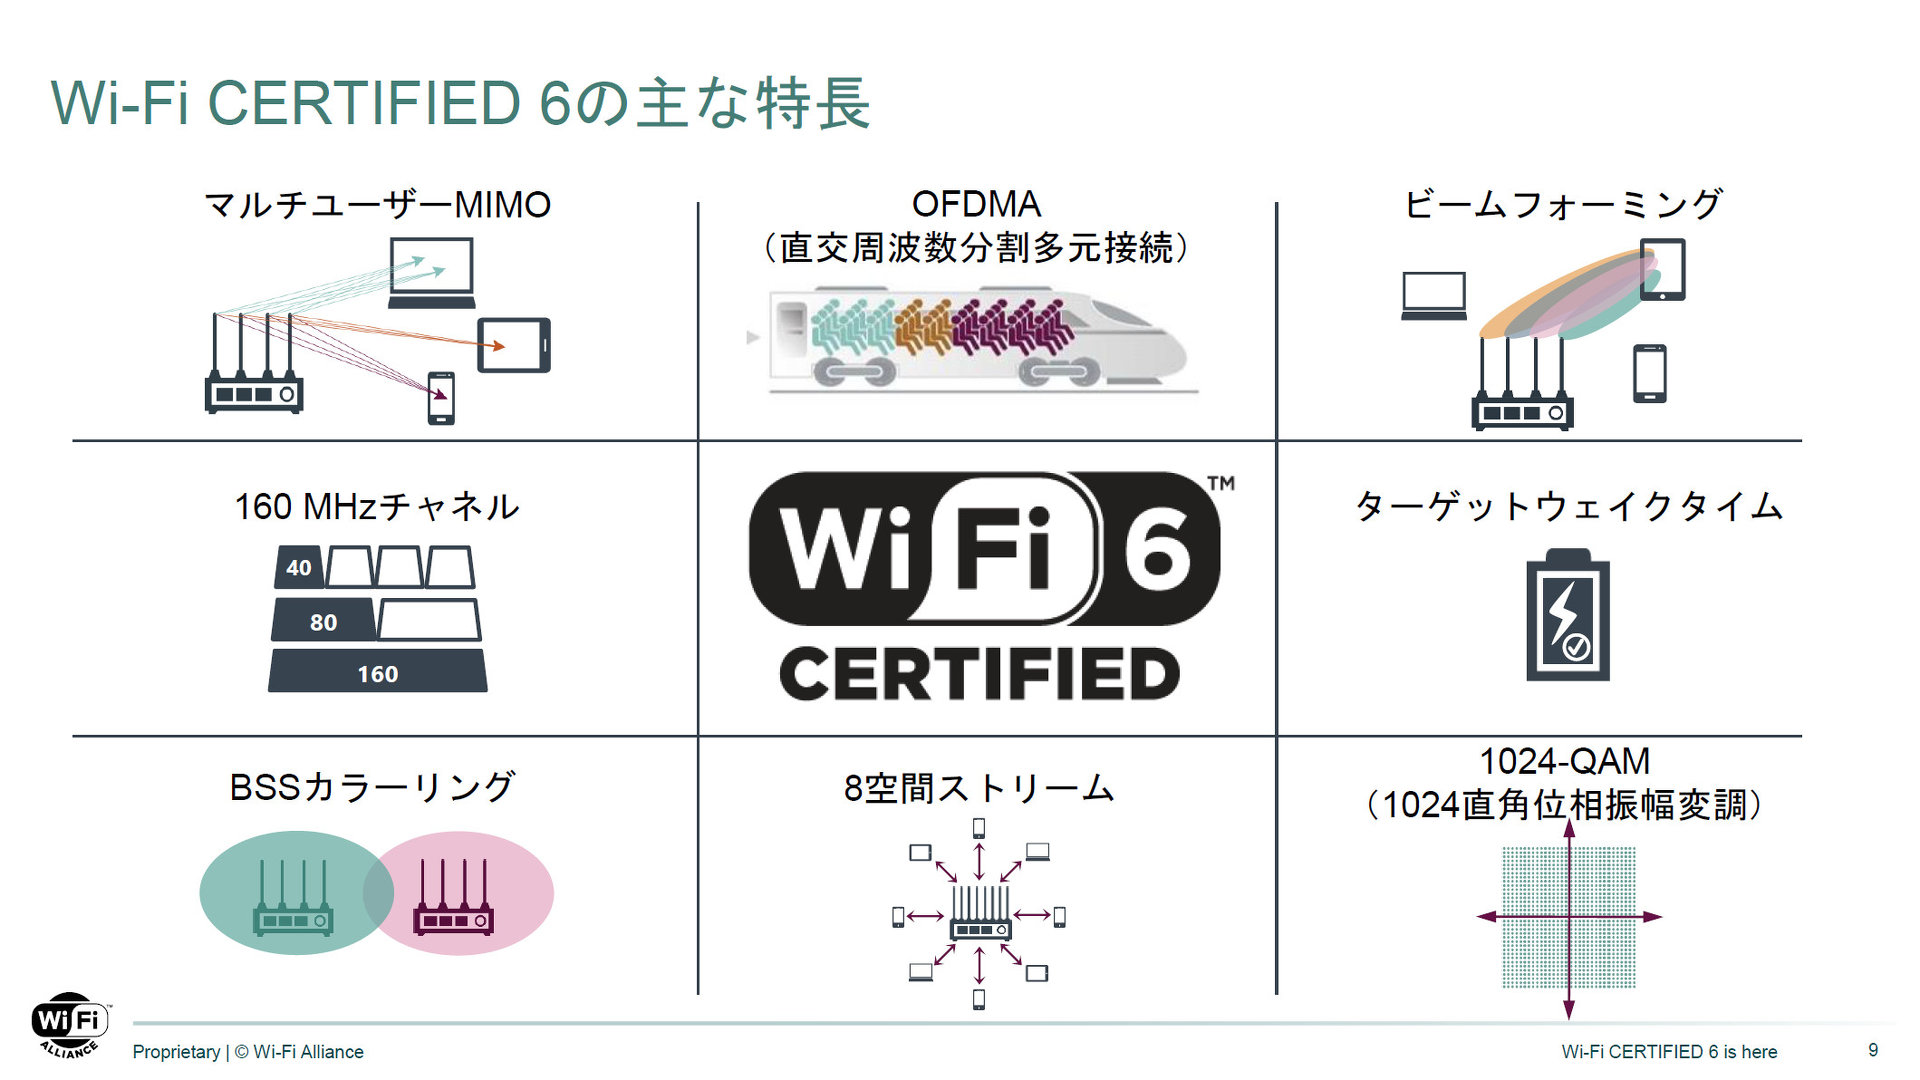  Wi-Fi 6xVȗvfZpiNbNŊgj oTFWi-Fi Alliance